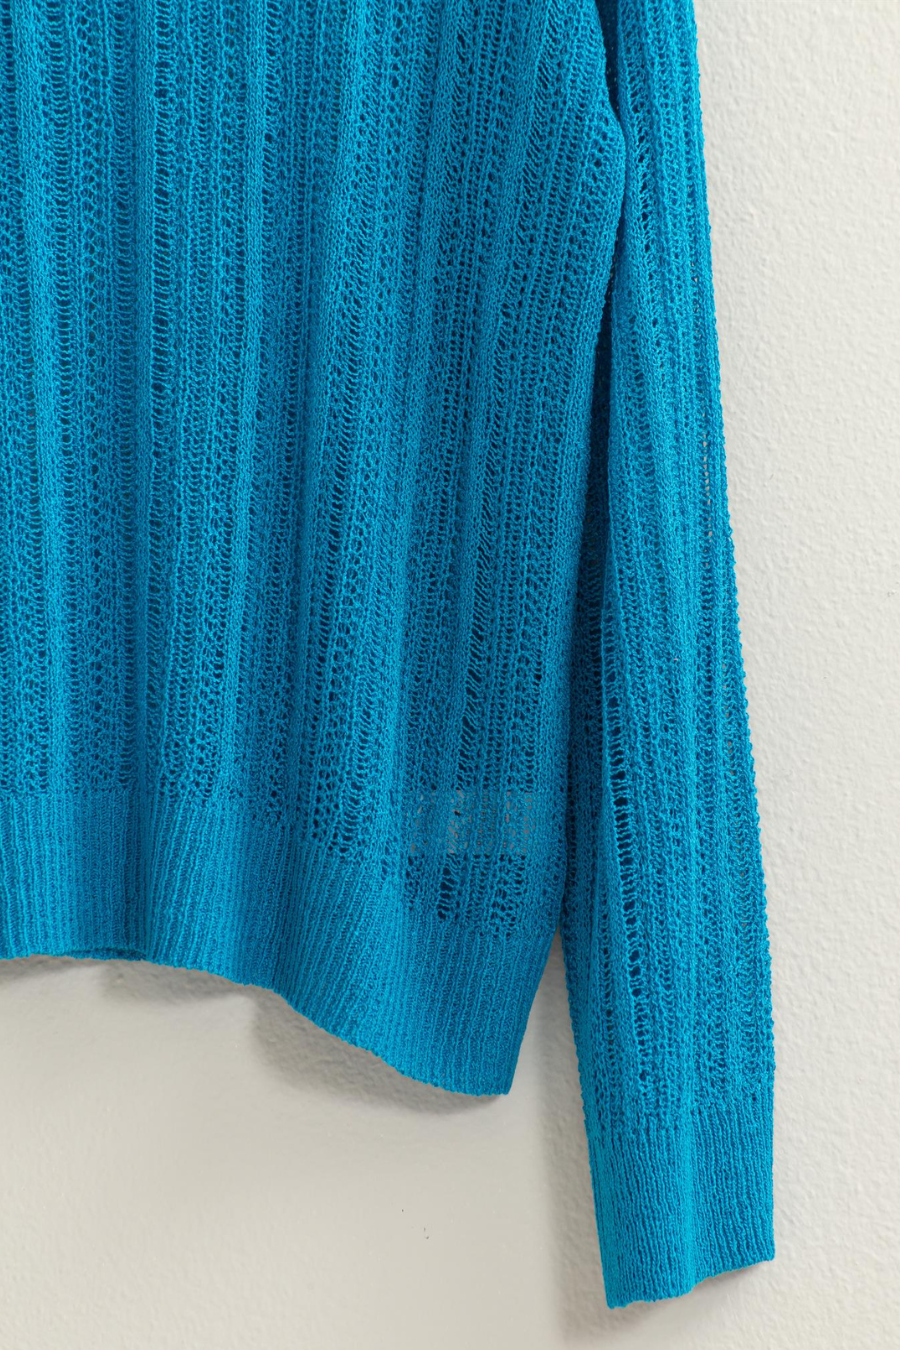 close up of knit of blue Lottie swearter